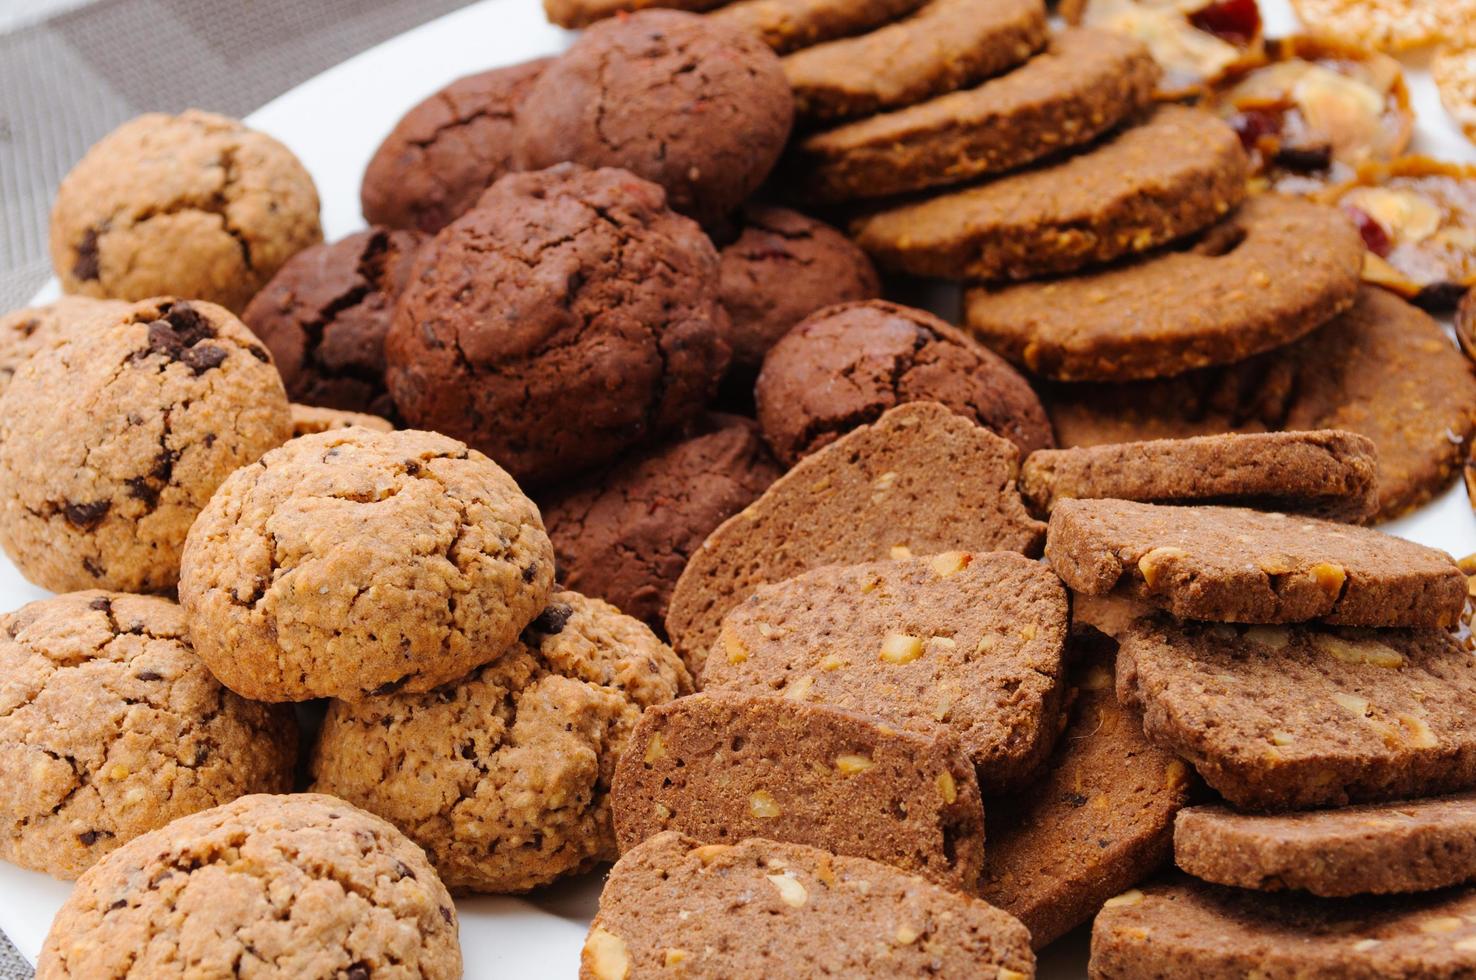 muitos tipos diferentes de biscoitos em um prato foto